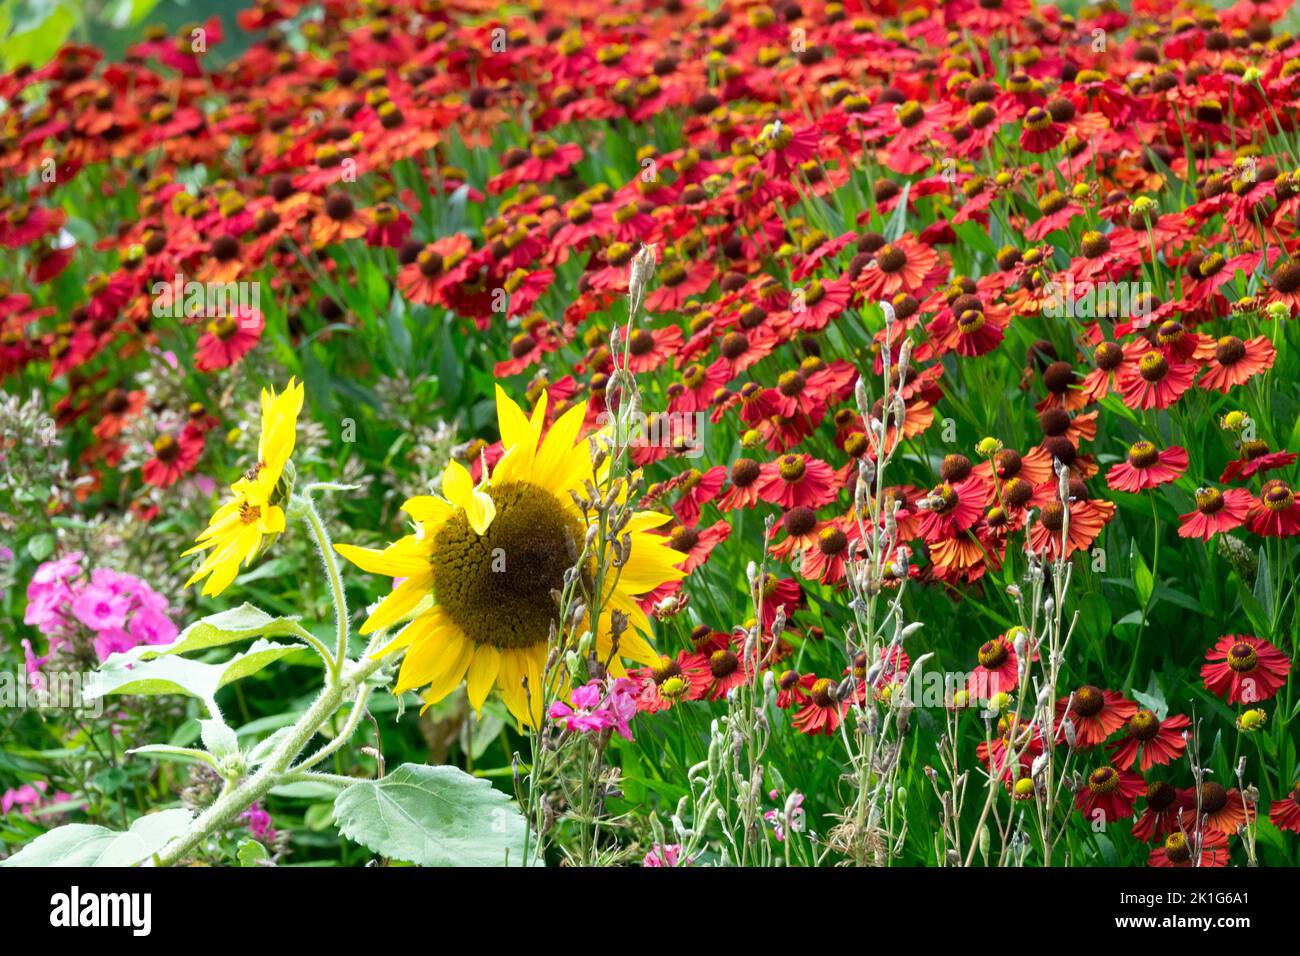 Helenium 'Velvet Rojo' Jardín girasol combinación de color amarillo-rojo en un jardín cama de flores en plena flor, plantas de verano Foto de stock